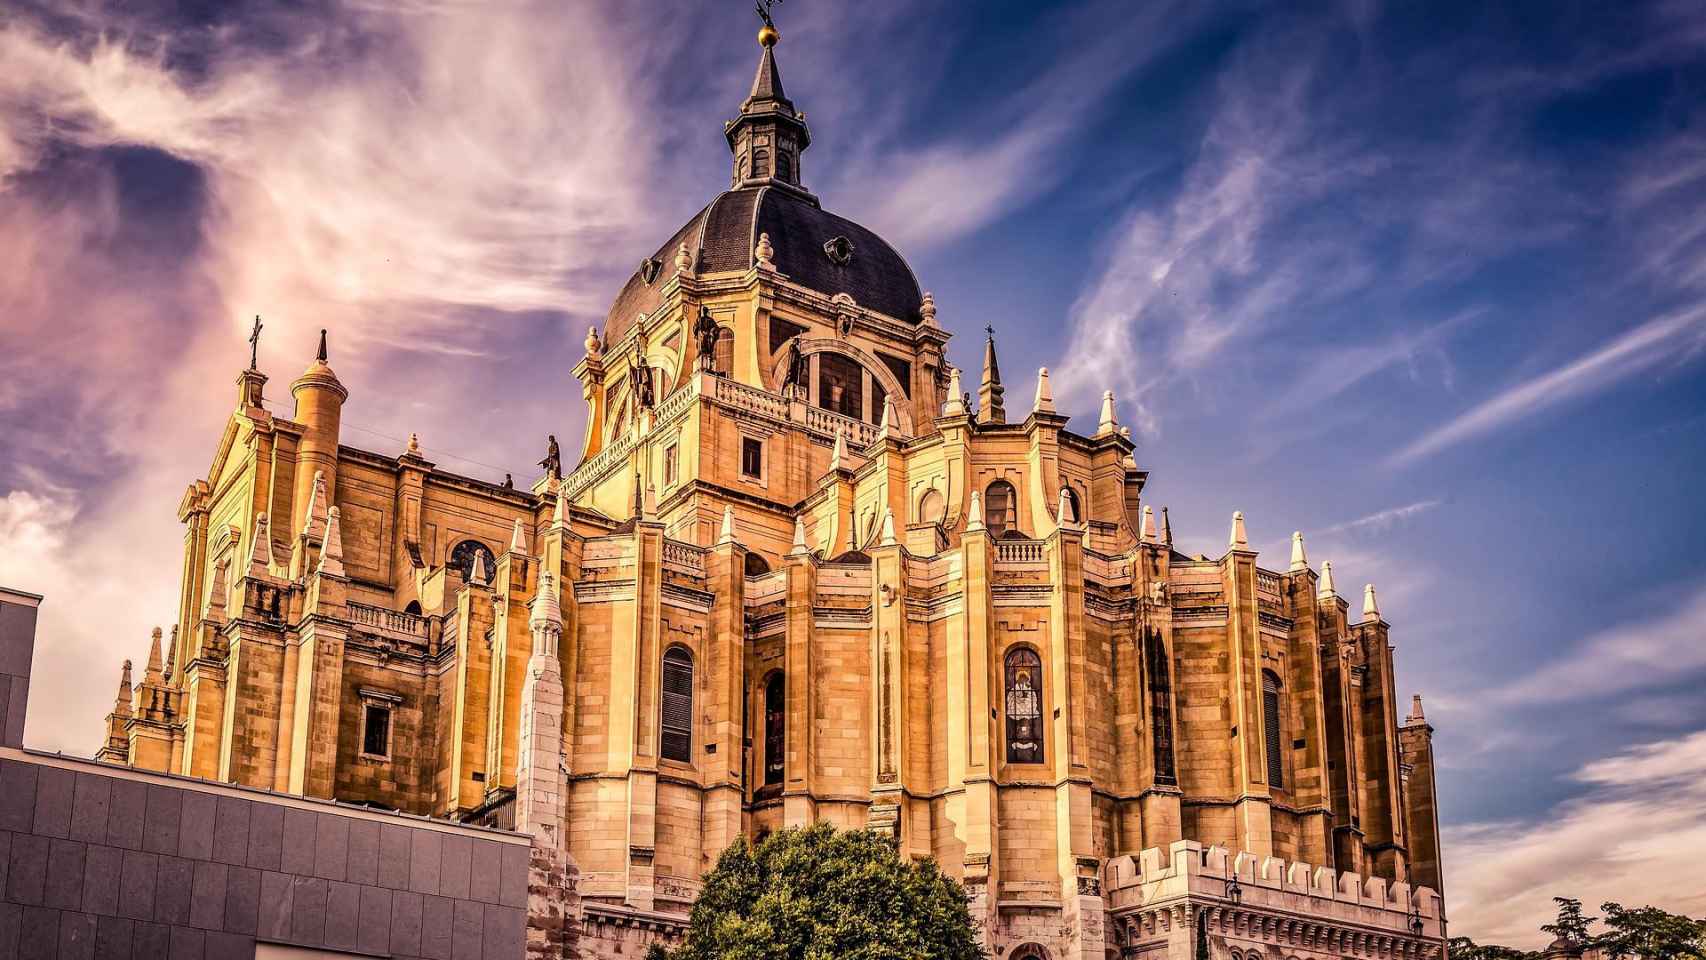 Esta es la catedral más fea de España, según los usuarios de Twitter